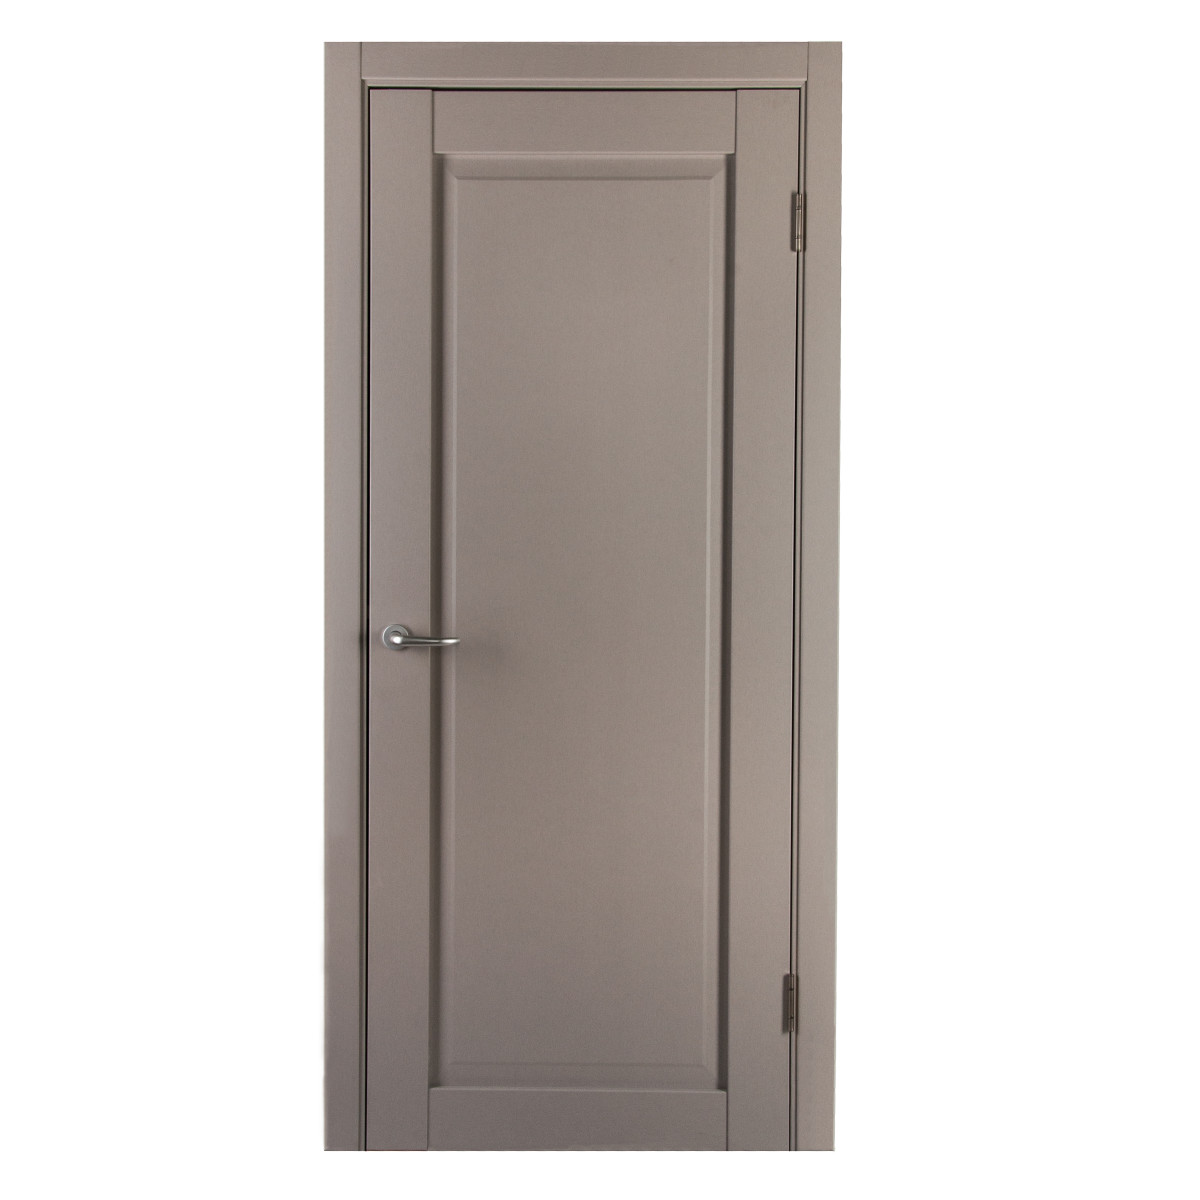 Дверь межкомнатная с фурнитурой Пьемонт 80х200 см, Hardflex, цвет платина светлая